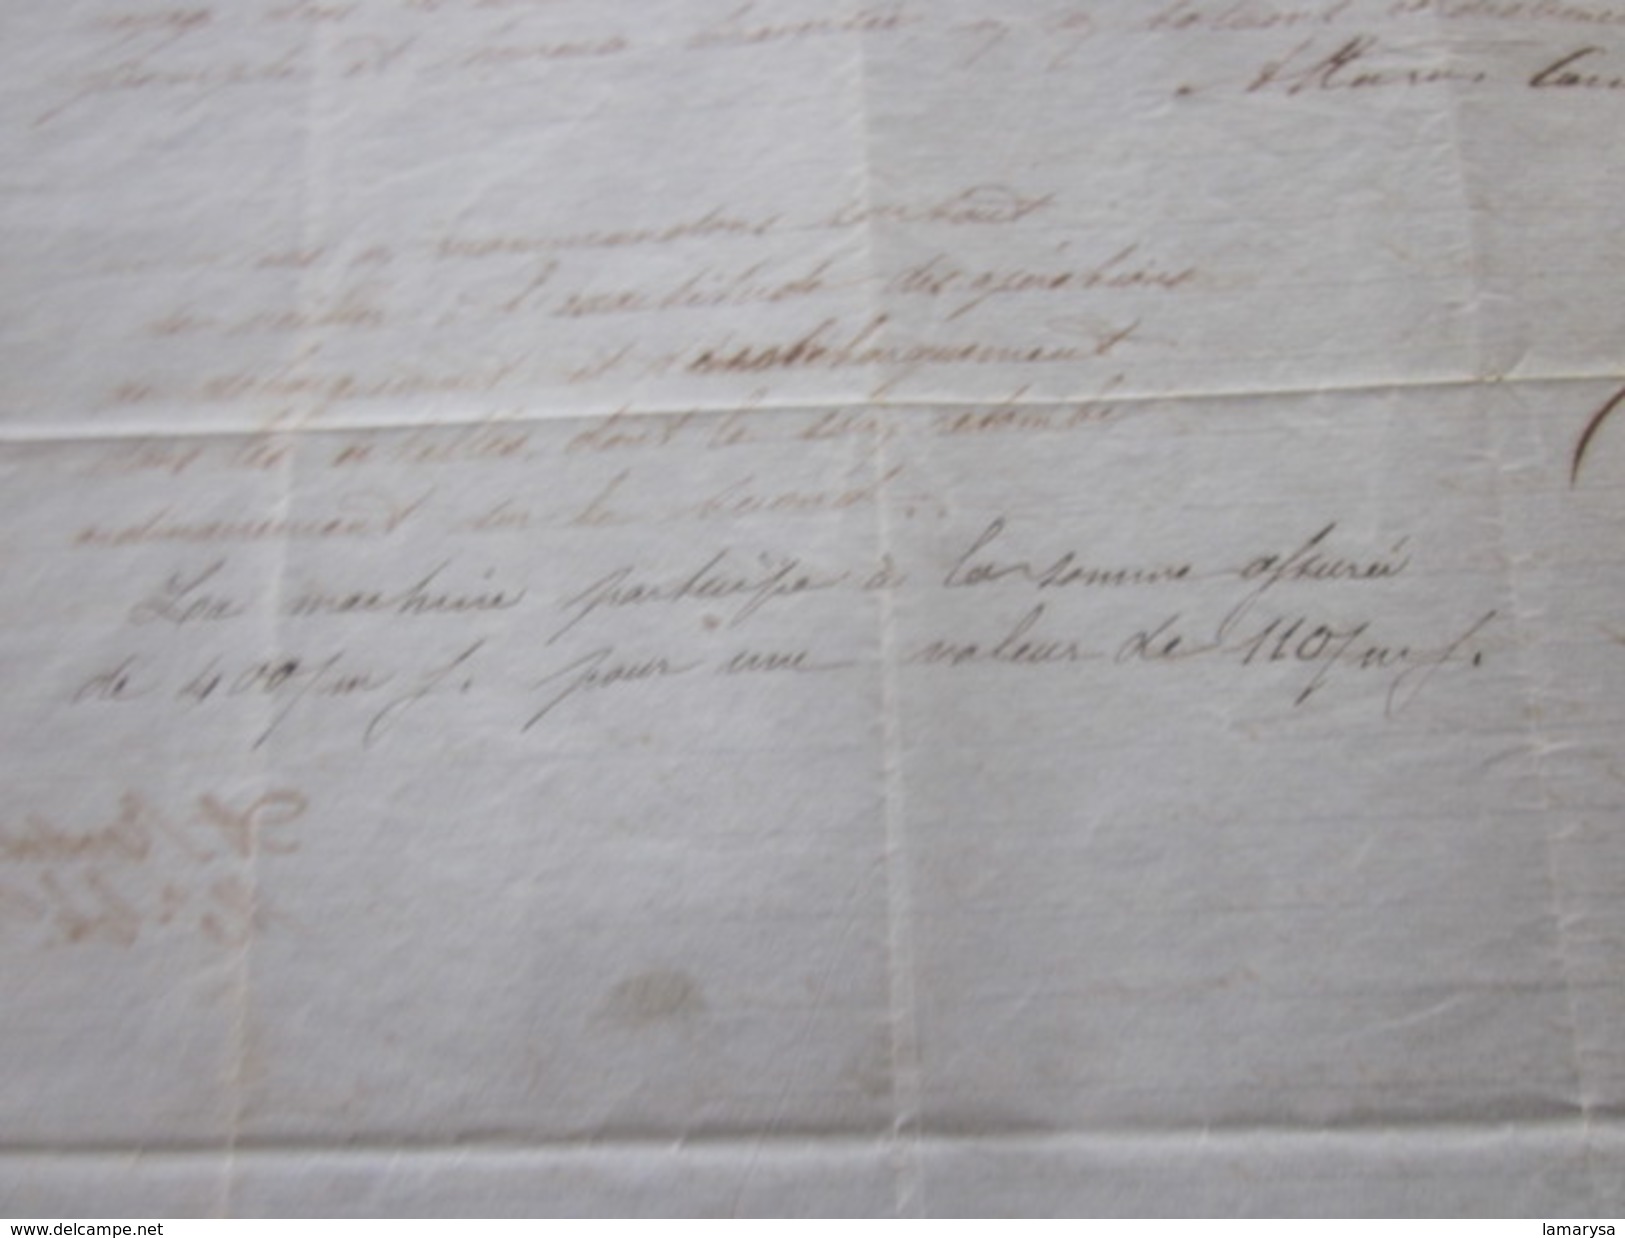 1860 Manuscrit Bill of Lading Connaissement Instructions armement mariti Bateau Vapeur"Pithéas"Lettre à Capitaine Fontan